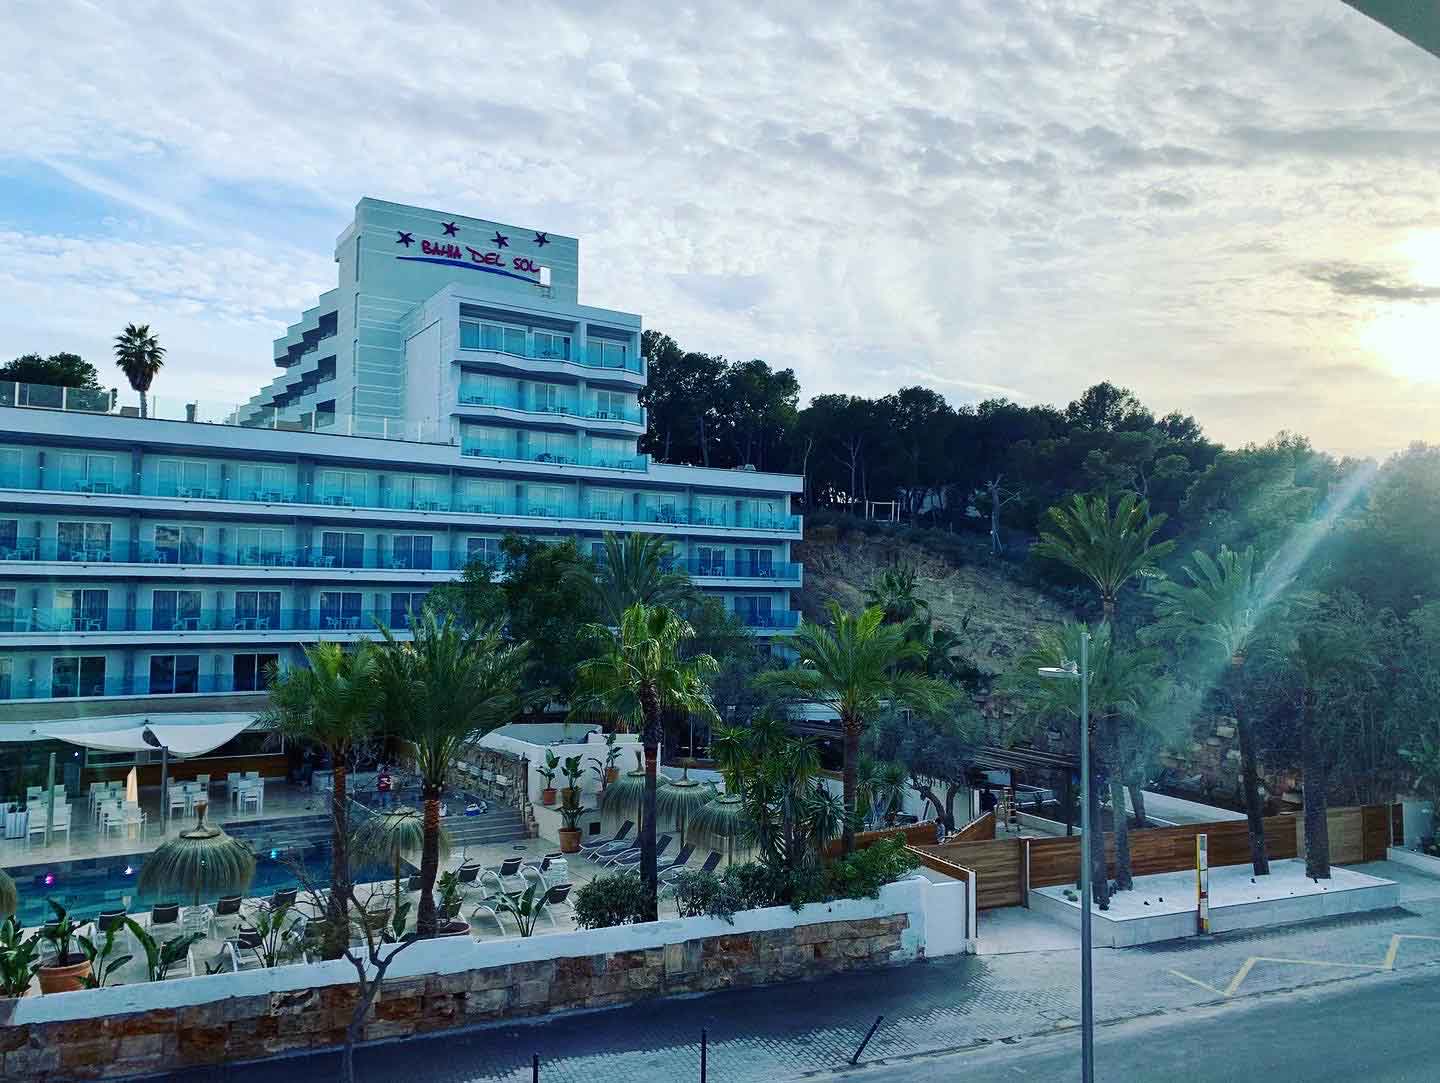 Seetel Hotel Bahia Del Sol Mallorca - Gustavo Neal Info